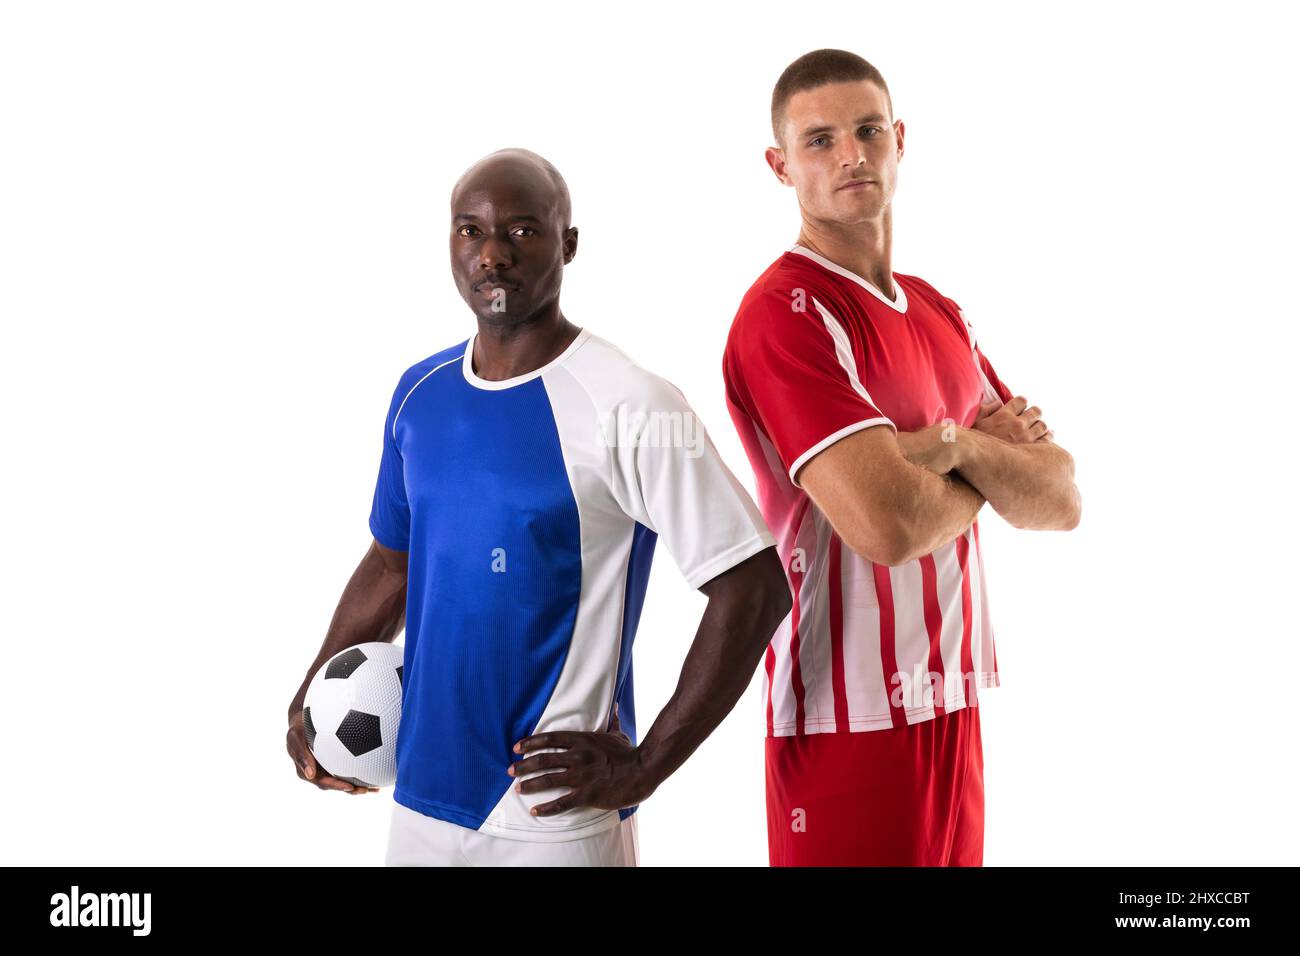 Porträt von selbstbewussten, multirassischen männlichen Fußballspielern, die vor weißem Hintergrund stehen Stockfoto